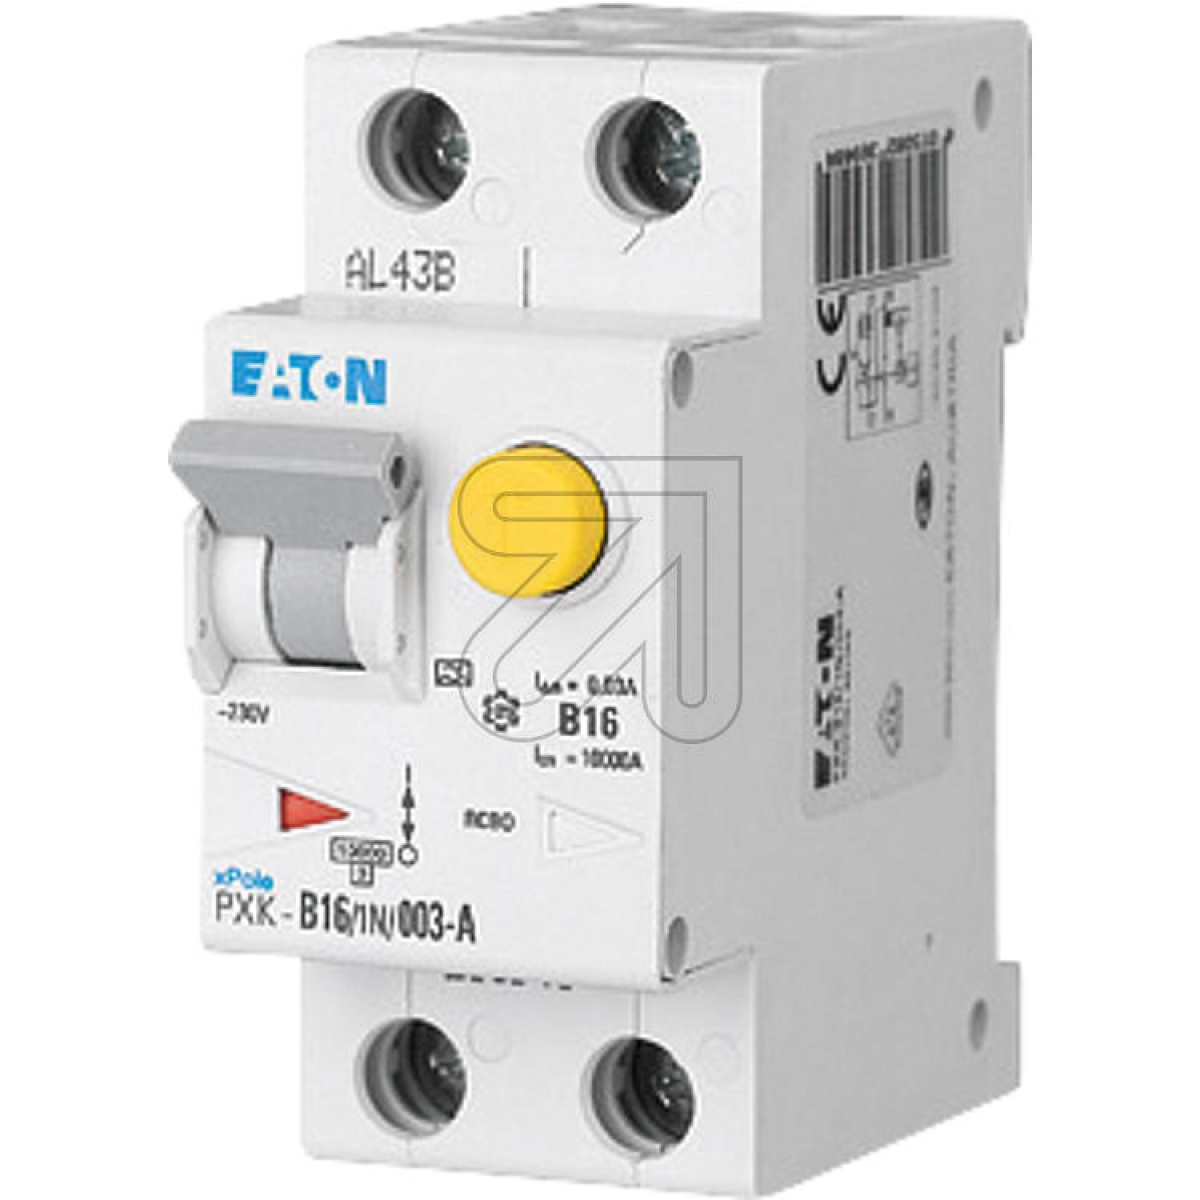 EATONFI/LS switch PXK-B16/1N/003-F 193528Article-No: 181380